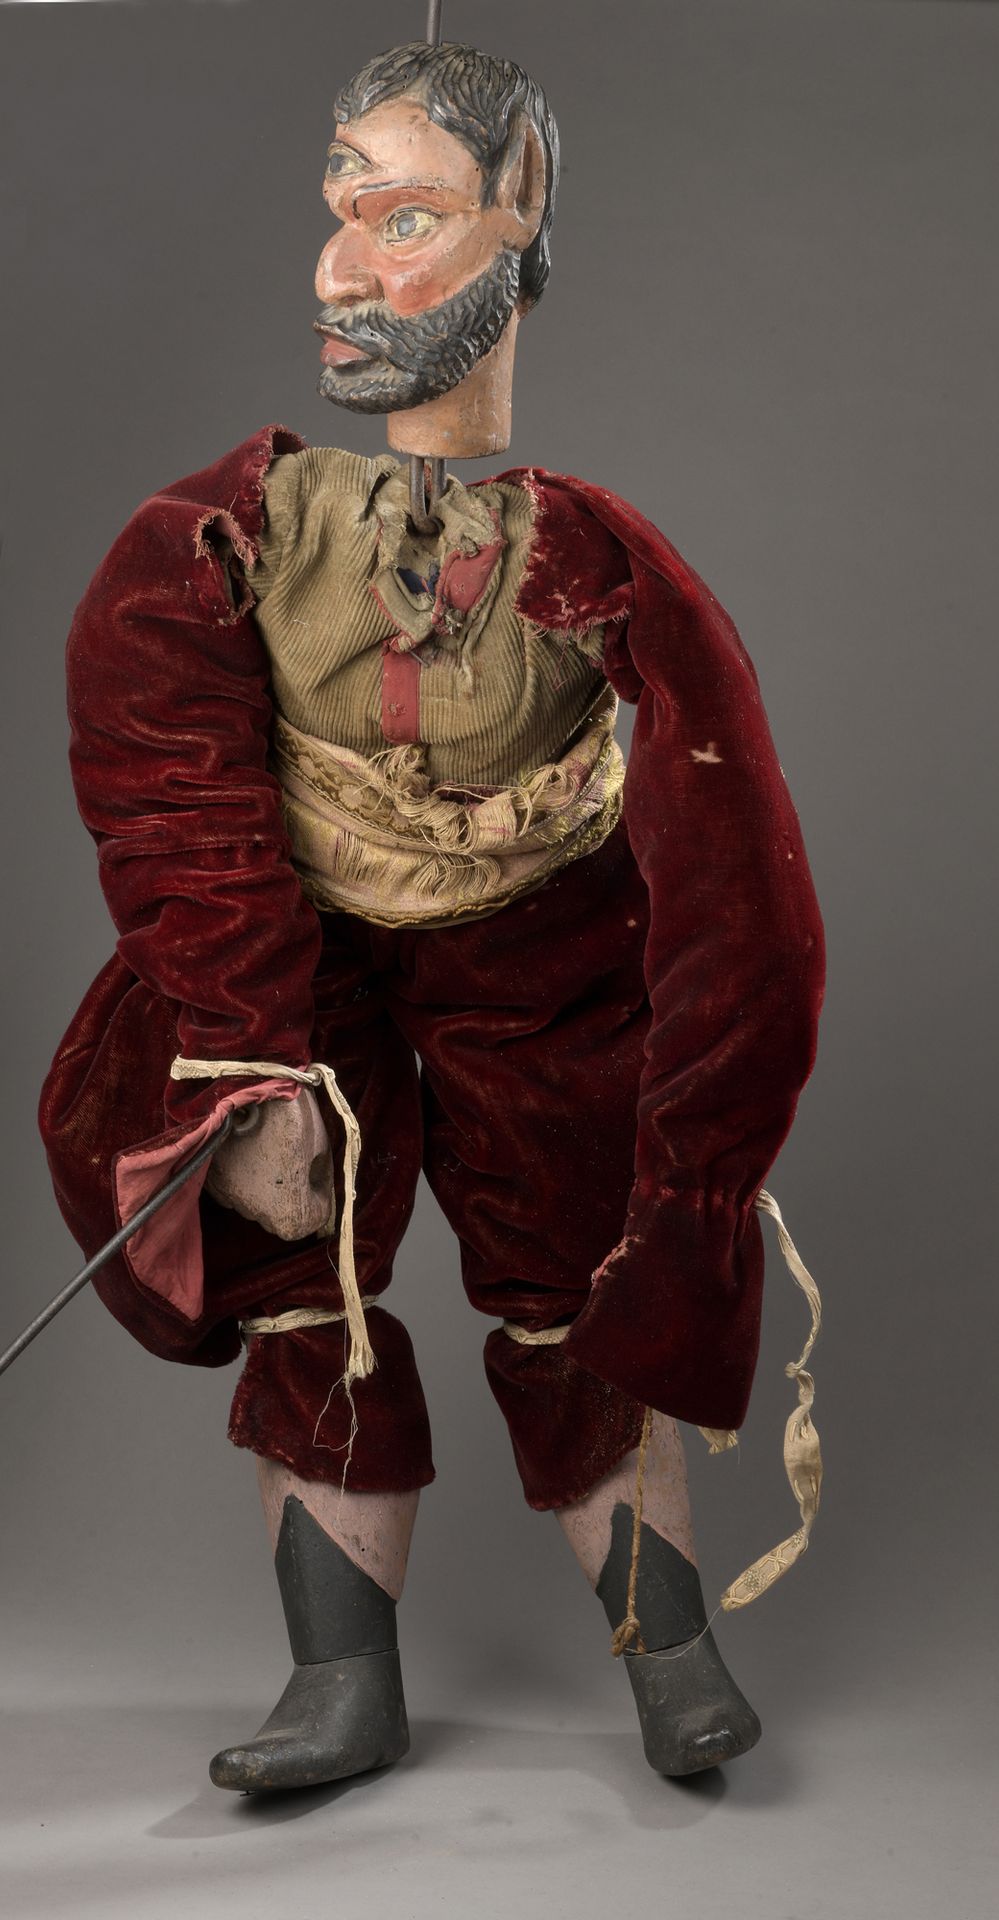 Null 大型棒状和线状木偶，描绘了一个穿着天鹅绒衣服的男人，有涂色的木头手和腿。头部，很有表现力的大胡子，额头上的眼睛表示第三种表情，即自知之明。19世纪的欧&hellip;